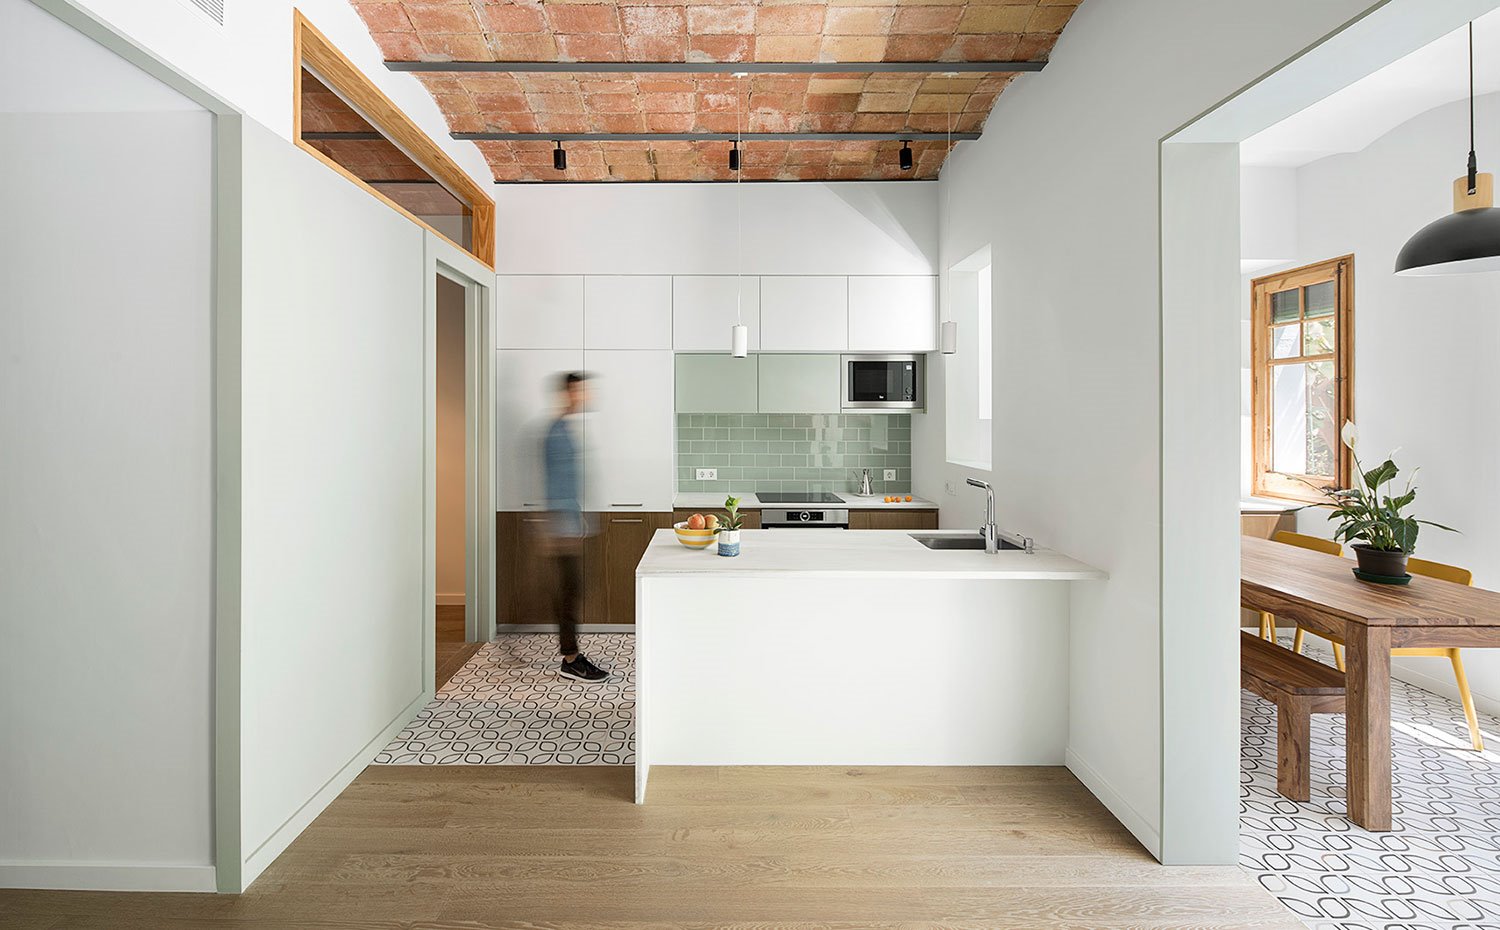 Cocina abierta con península, mobiliario en blanco, techo con bóveda catalana con apertura a comedor